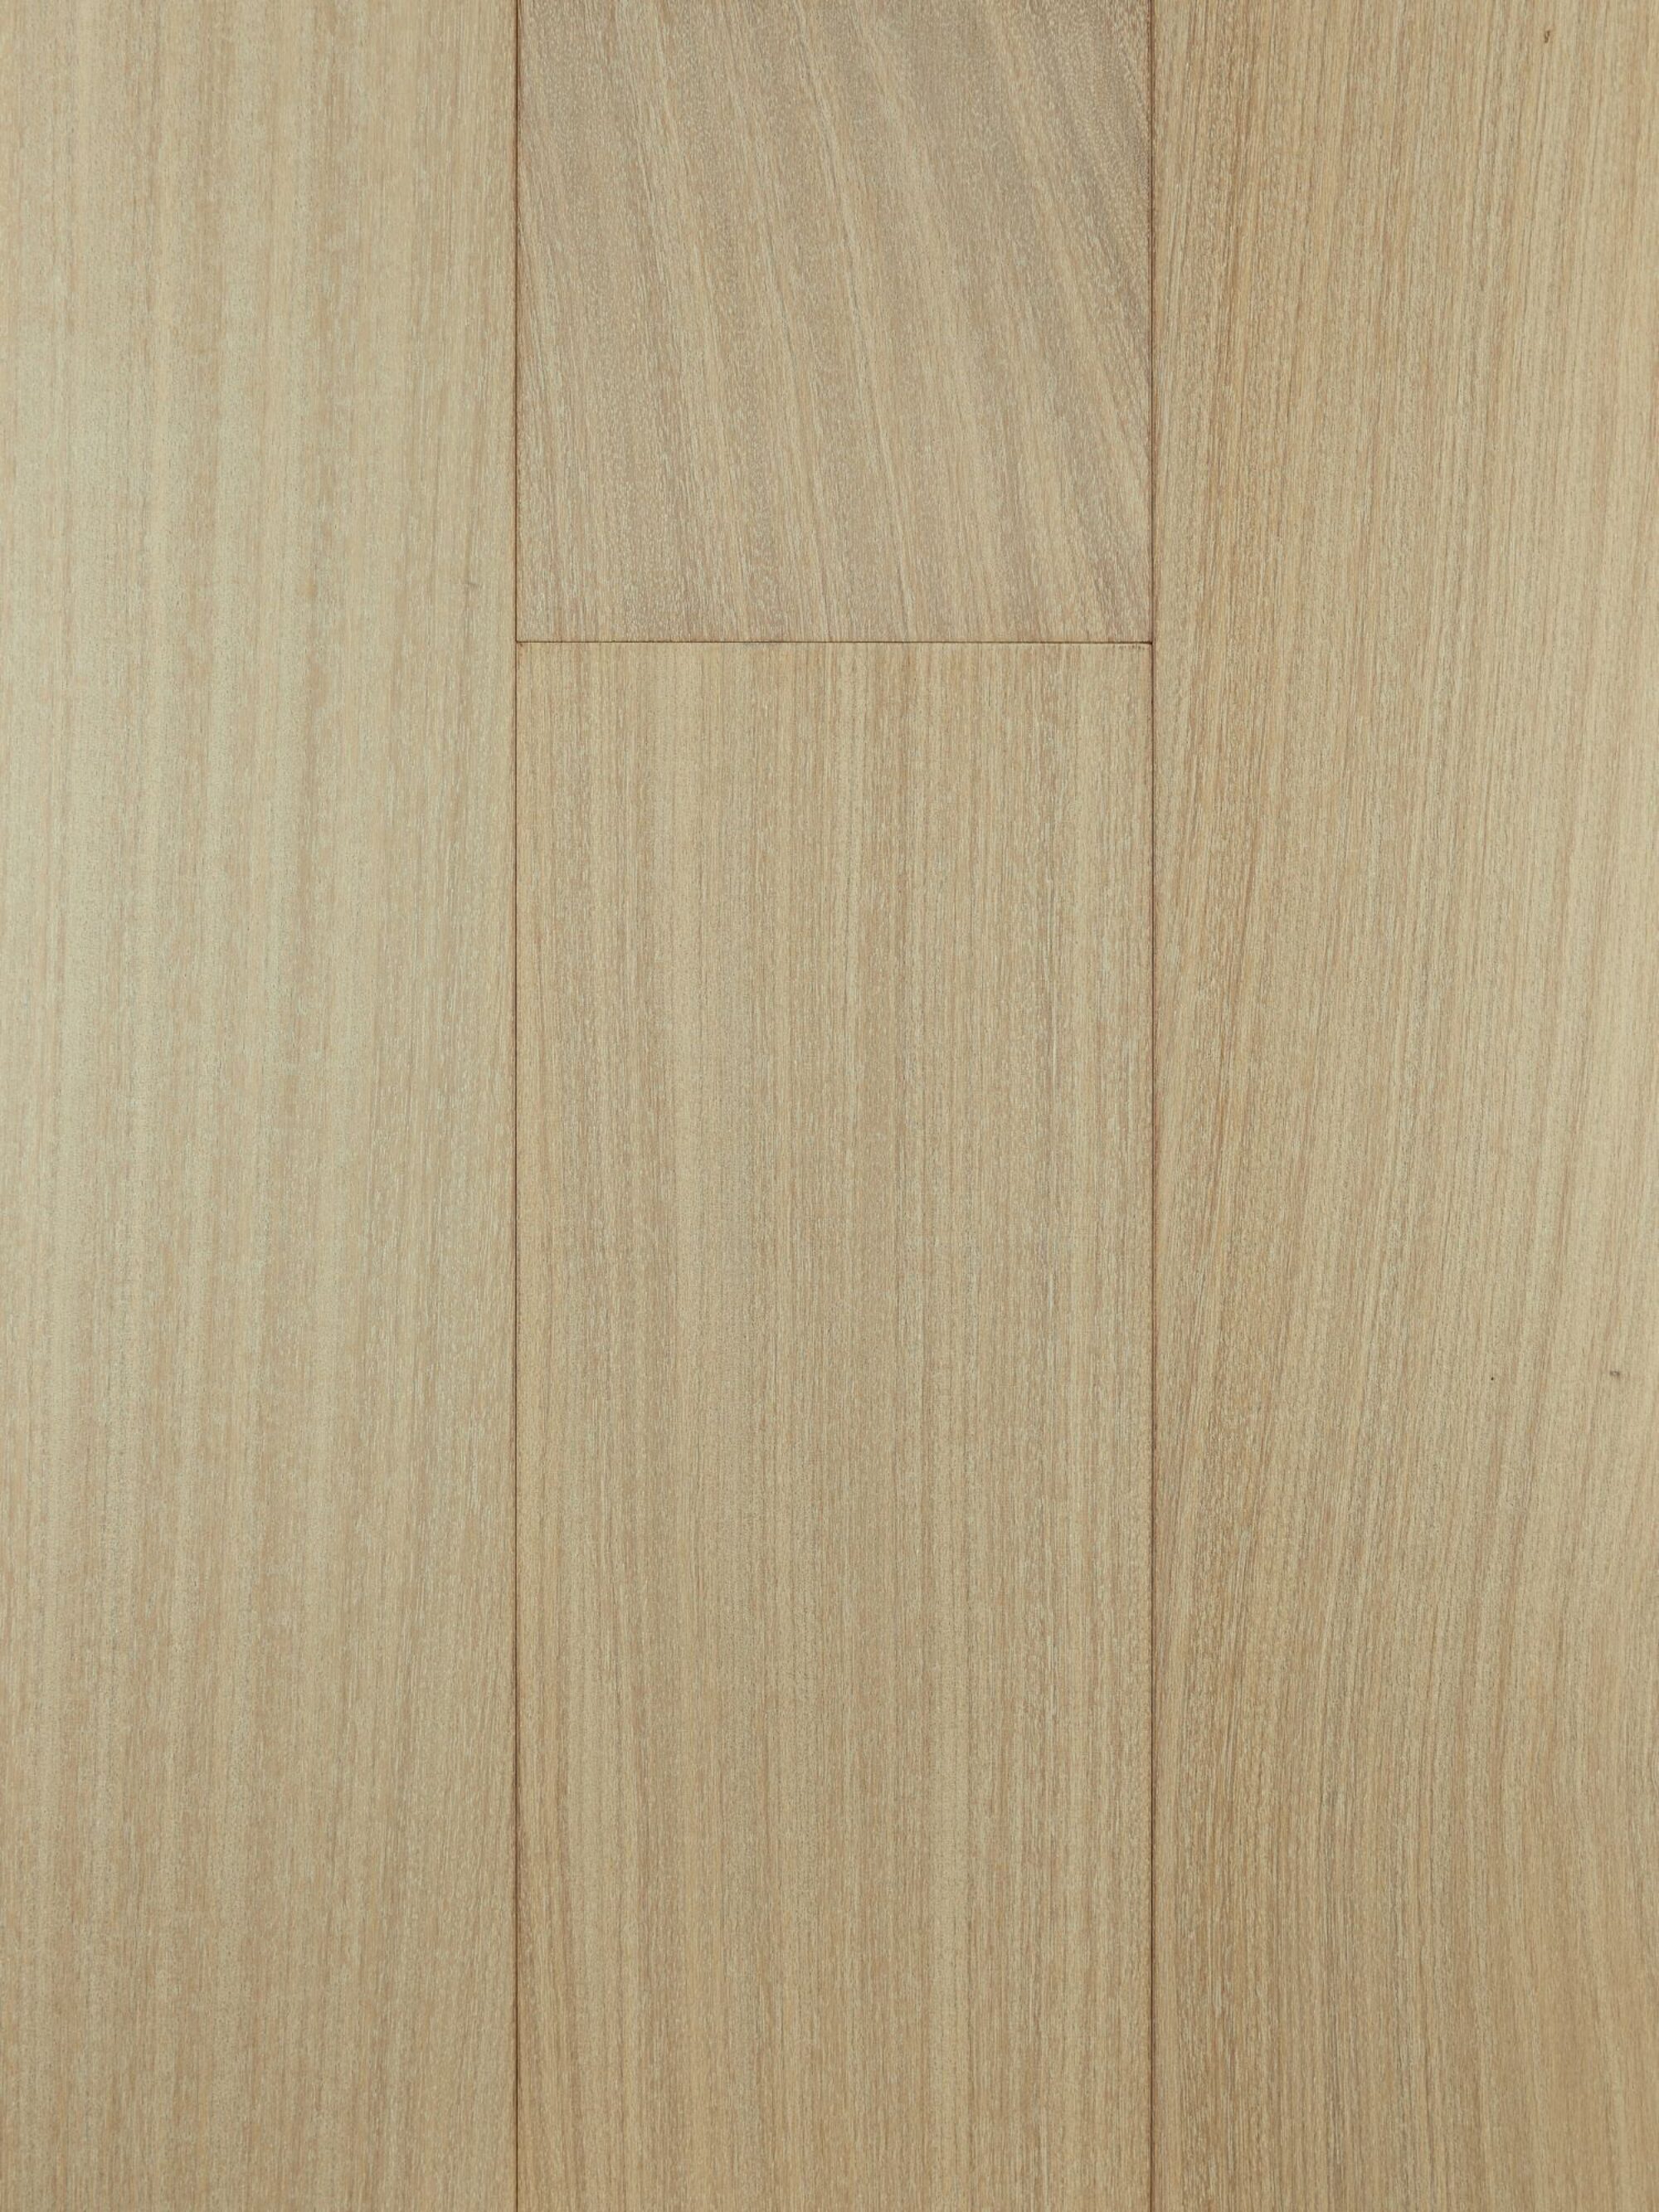 mahogany sand, bleached mahogany contemporary wood flooring